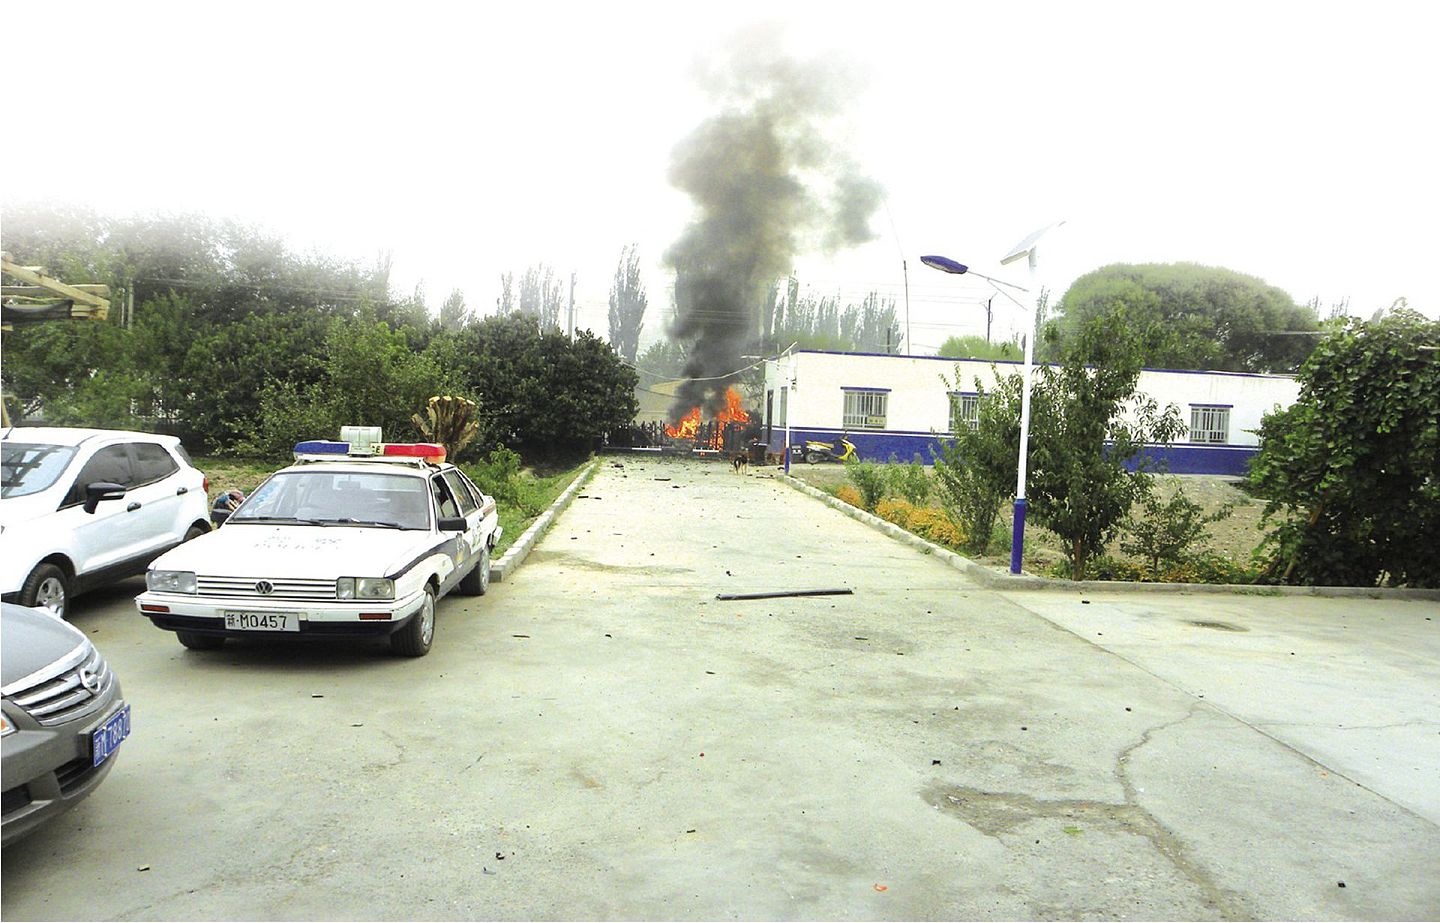 2014年9月21日，新疆巴音郭楞蒙古自治州轮台县阳霞镇派出所、农贸市场、铁热克巴扎乡派出所、商铺等遭到恐怖分子爆炸袭击，造成10人死亡、54人受伤，79辆汽车受损。（新华社）